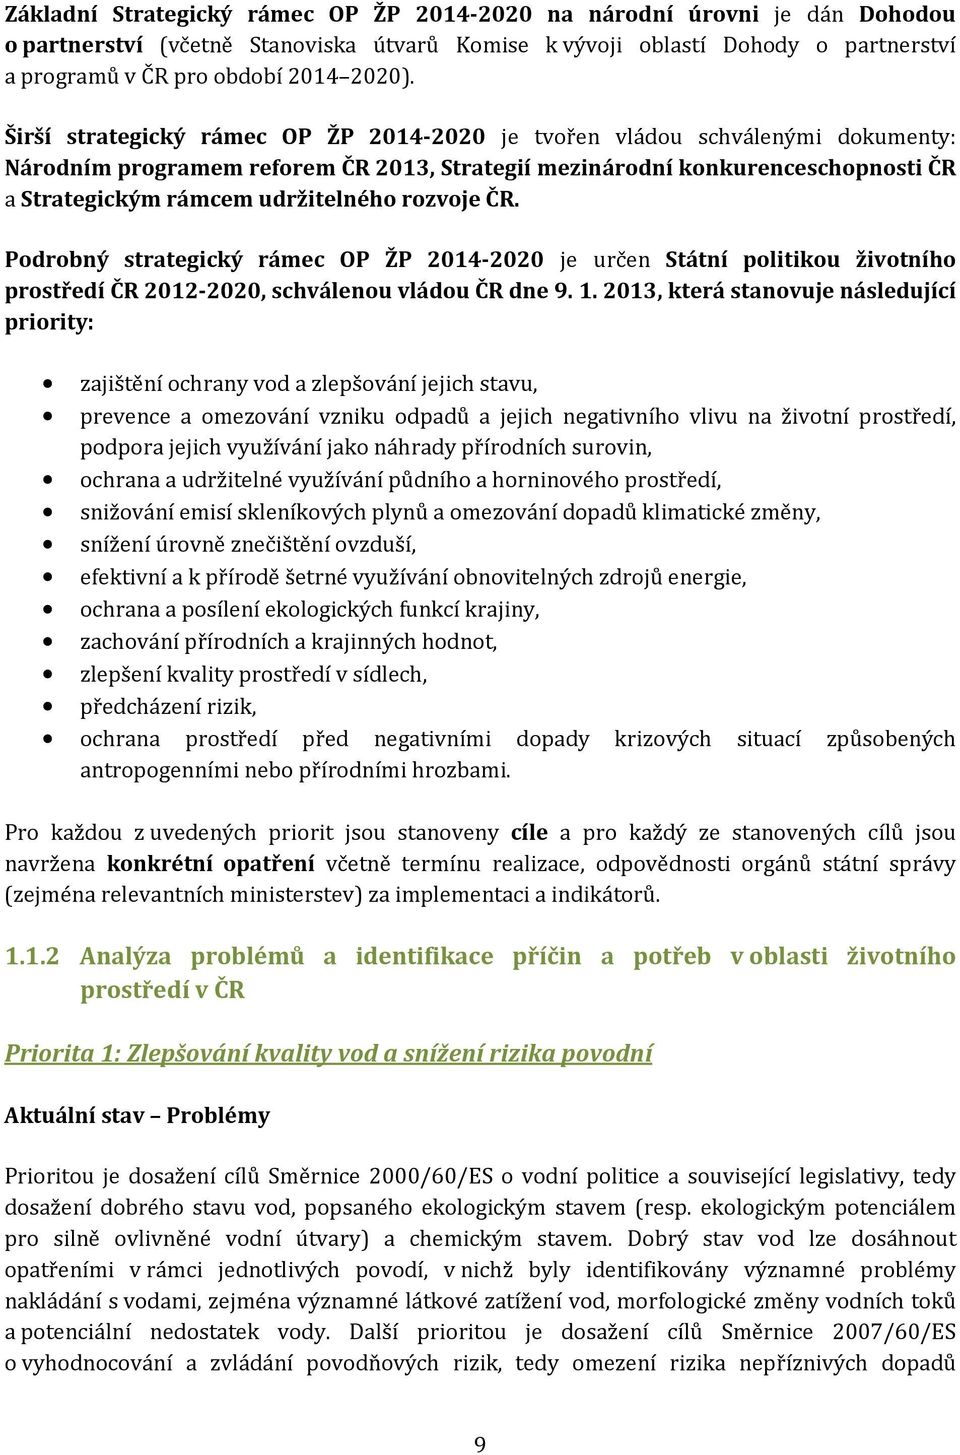 rozvoje ČR. Podrobný strategický rámec OP ŽP 2014-2020 je určen Státní politikou životního prostředí ČR 2012-2020, schválenou vládou ČR dne 9. 1.